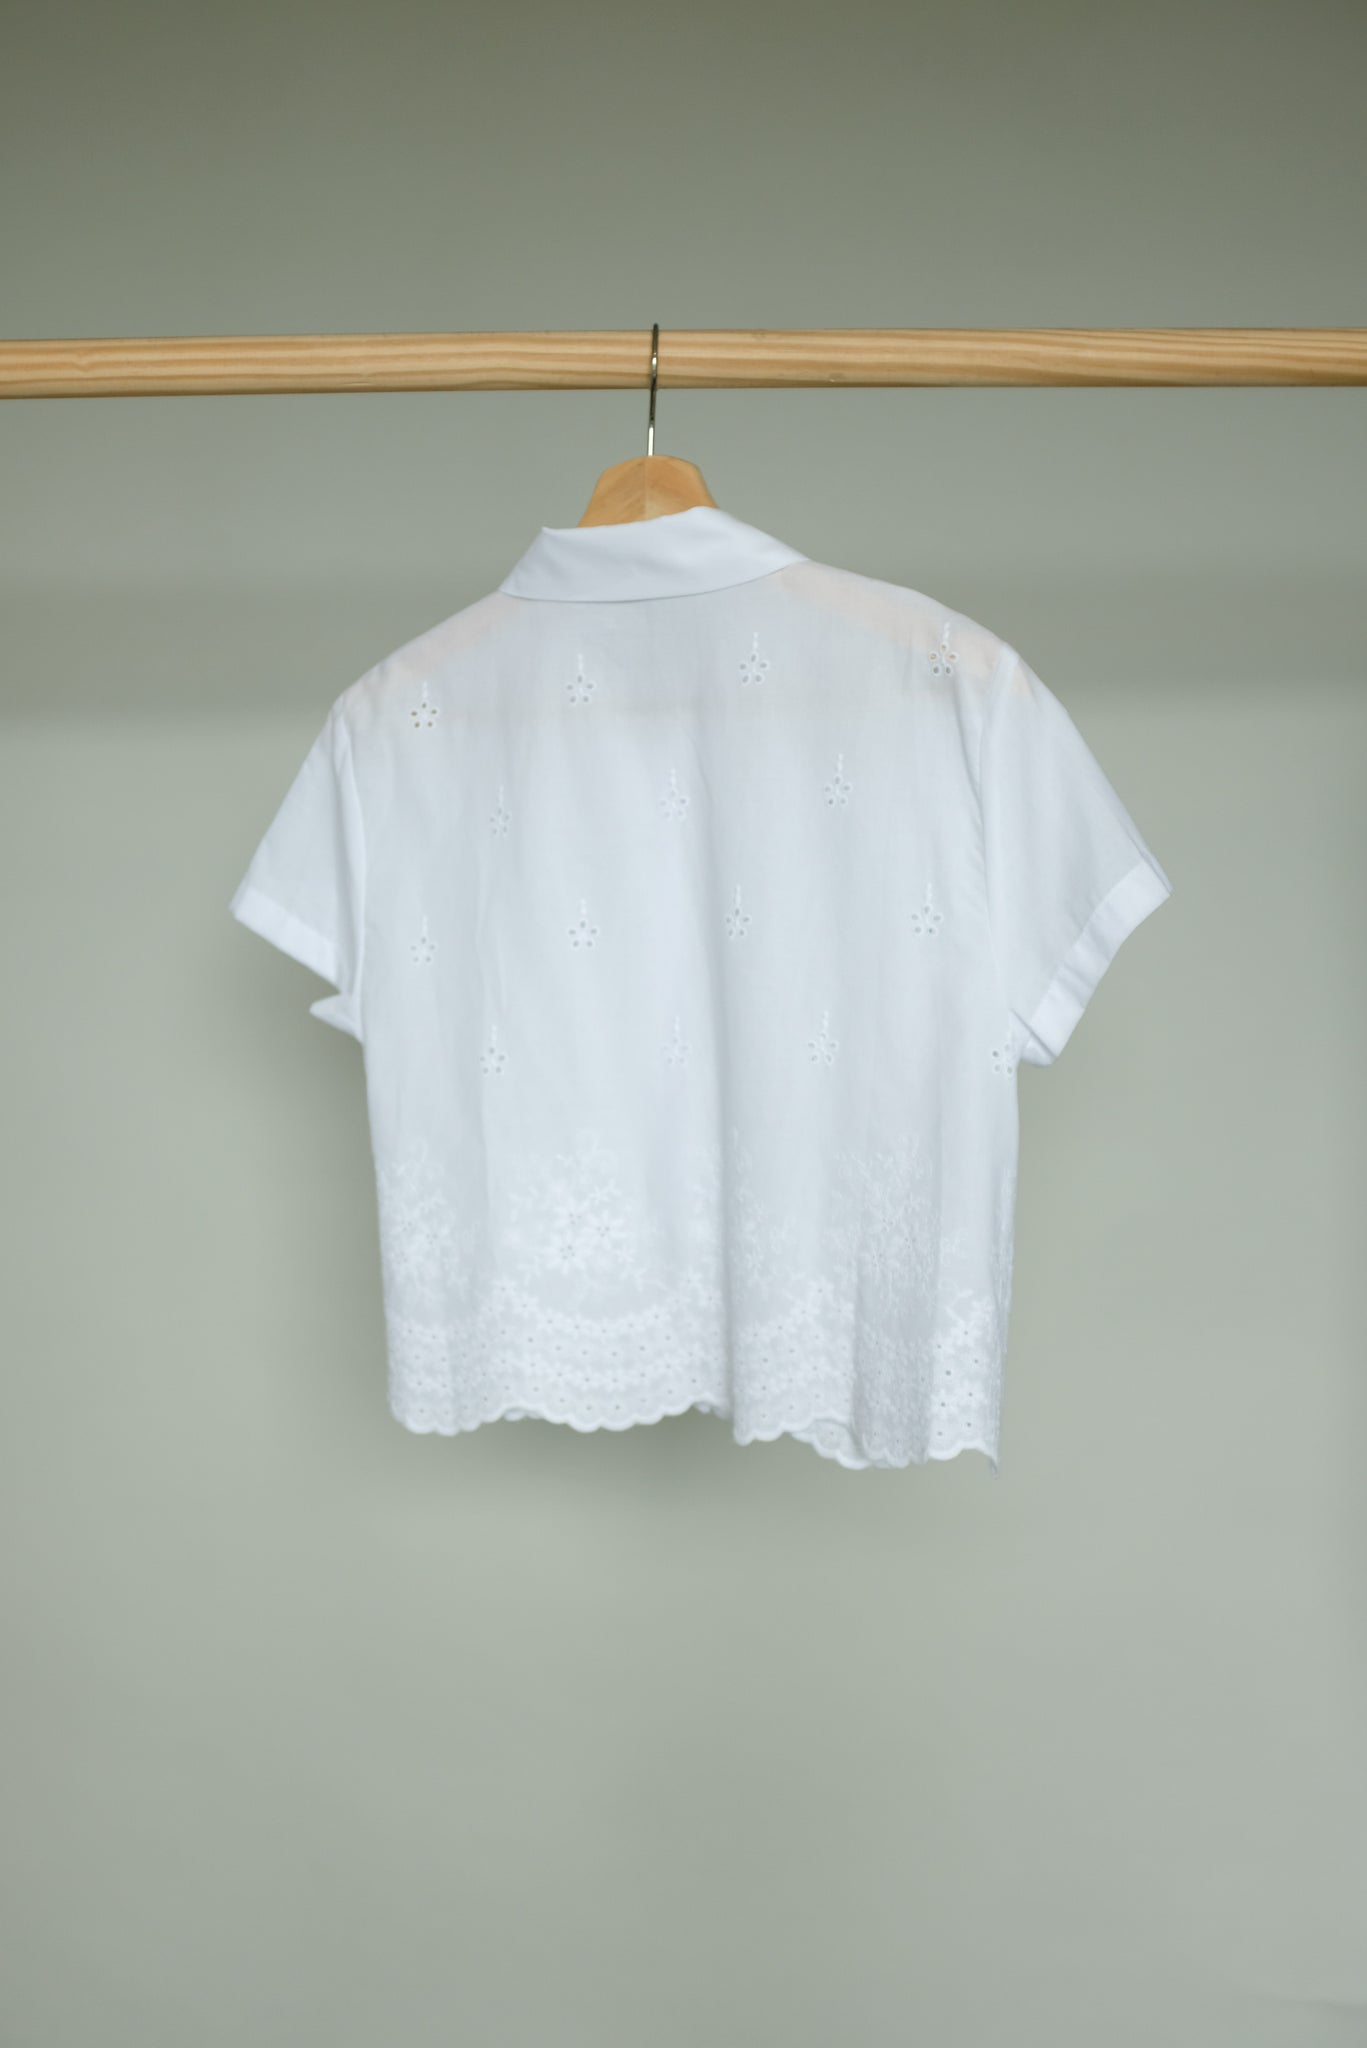 Petite] Lace Button Up Shirt Top (2 Colors)